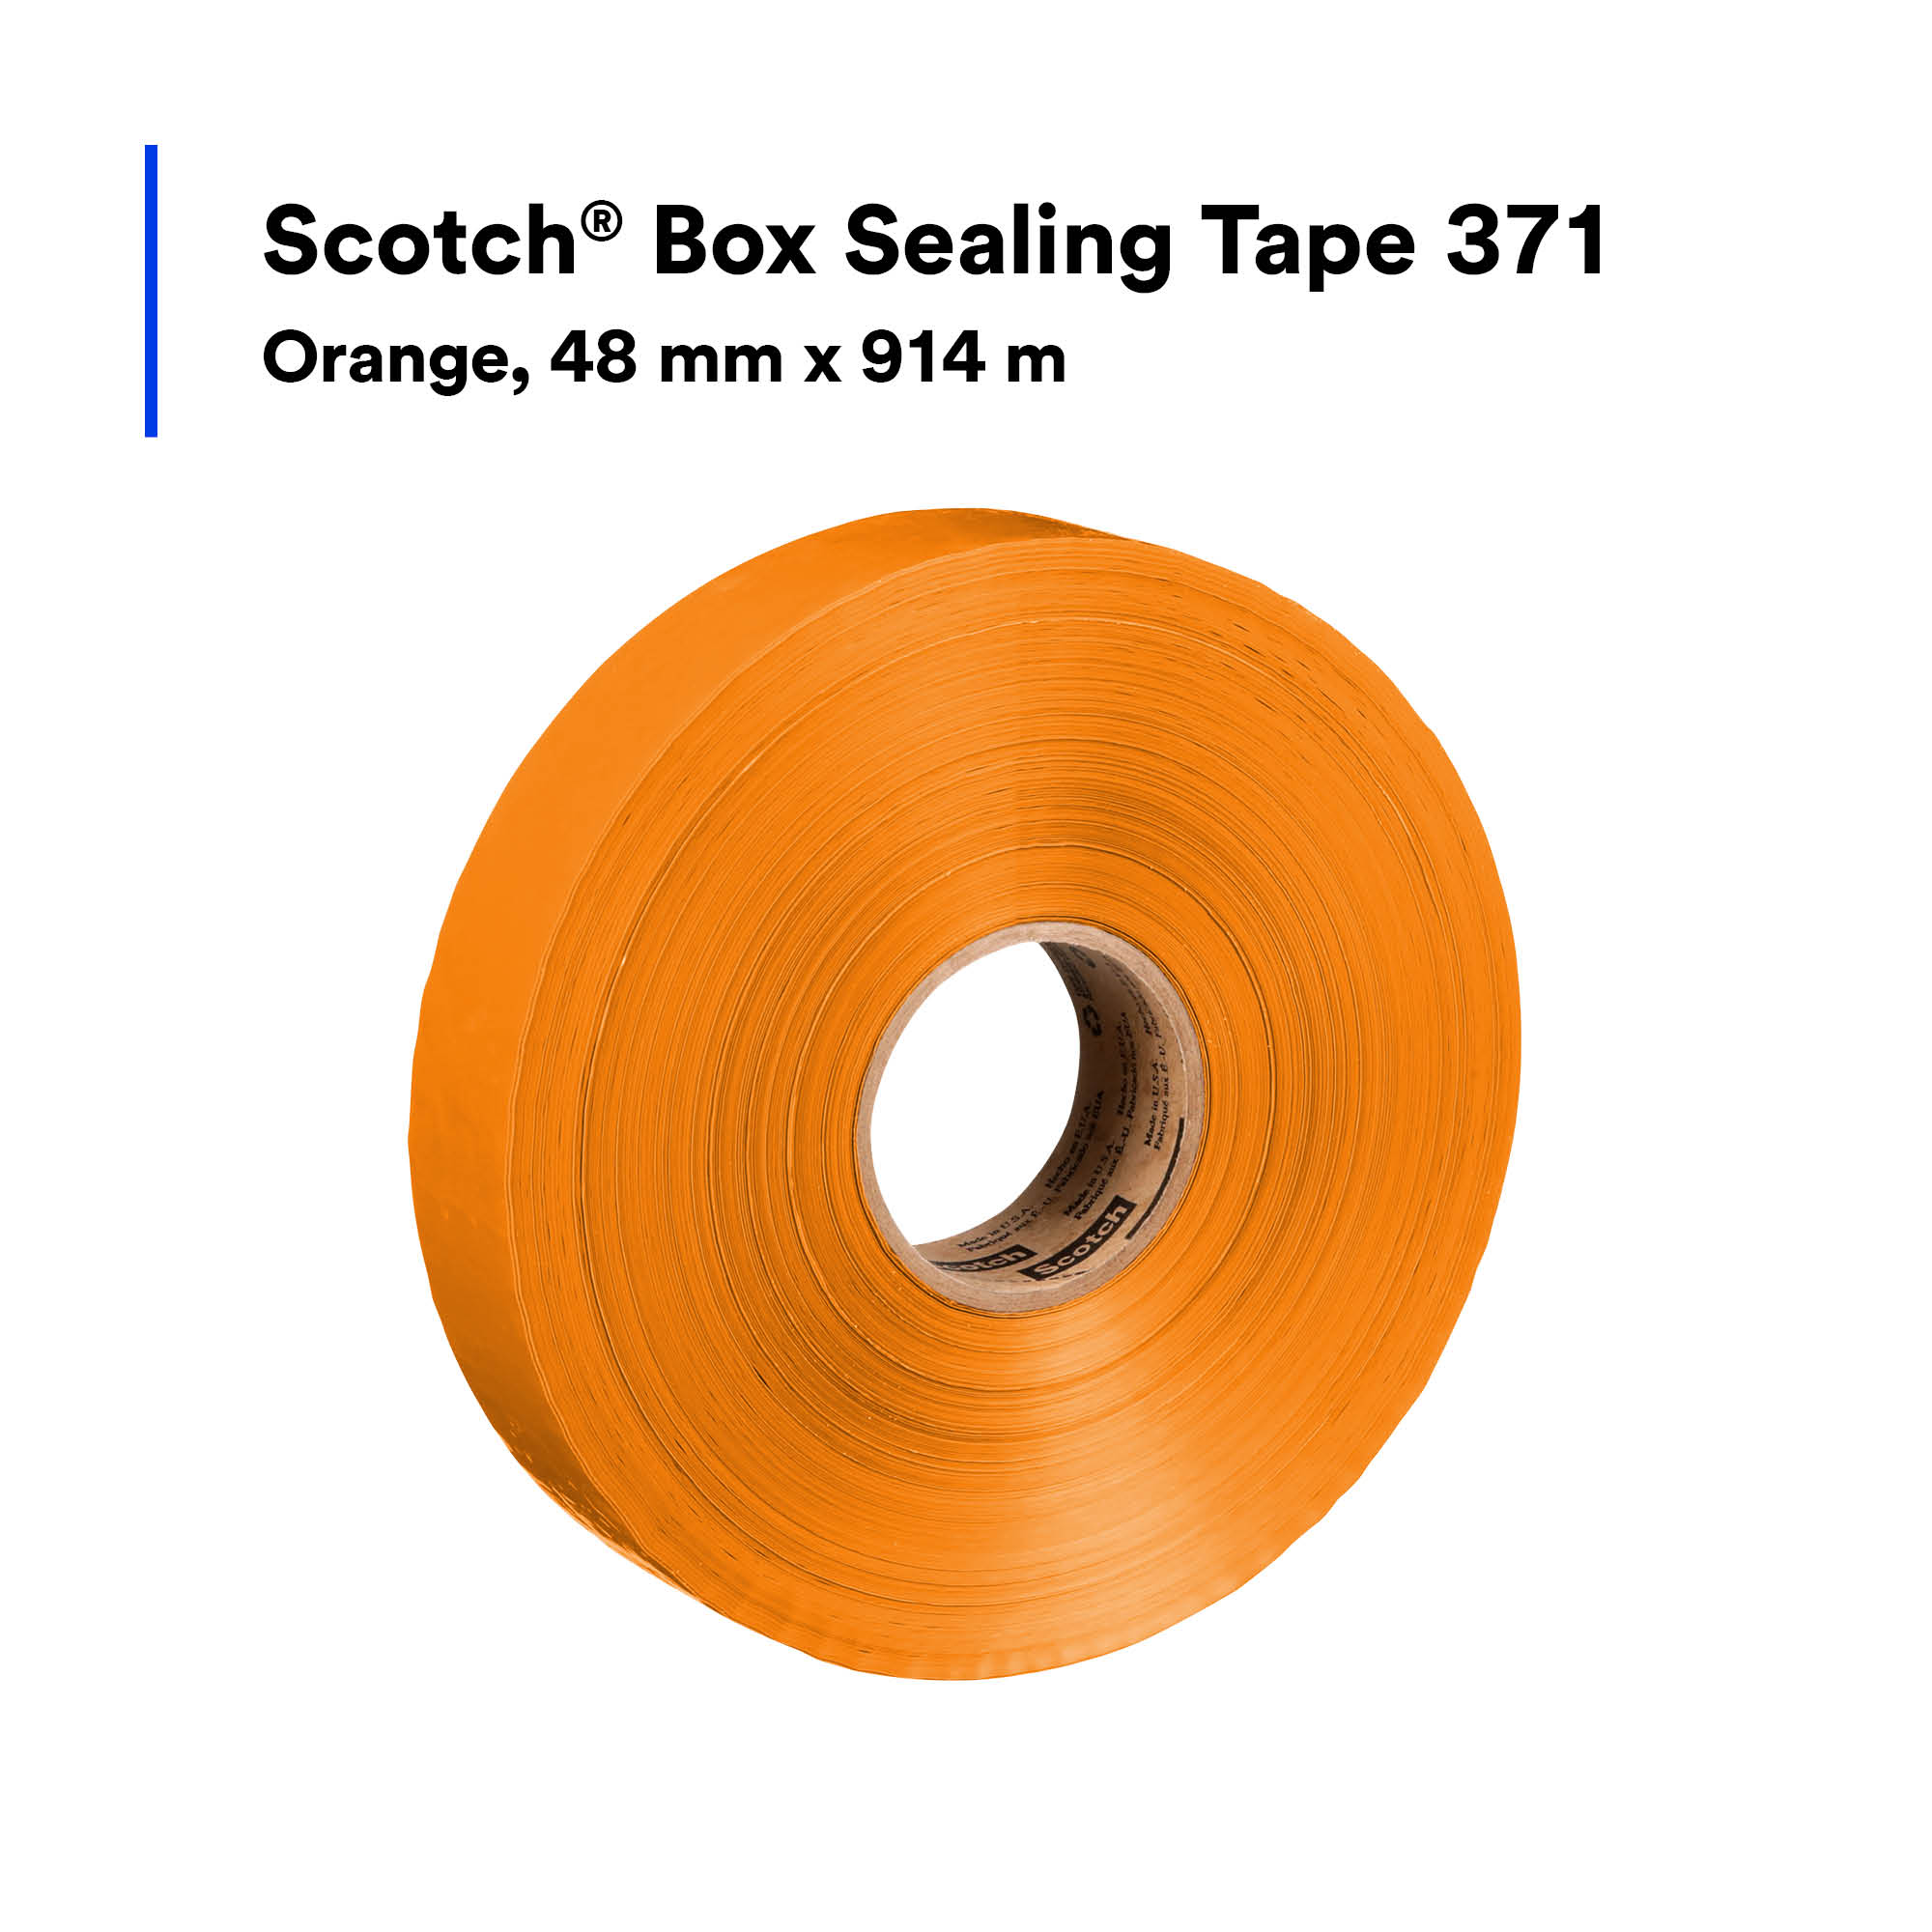 SKU 7010314190 | Scotch® Box Sealing Tape 371